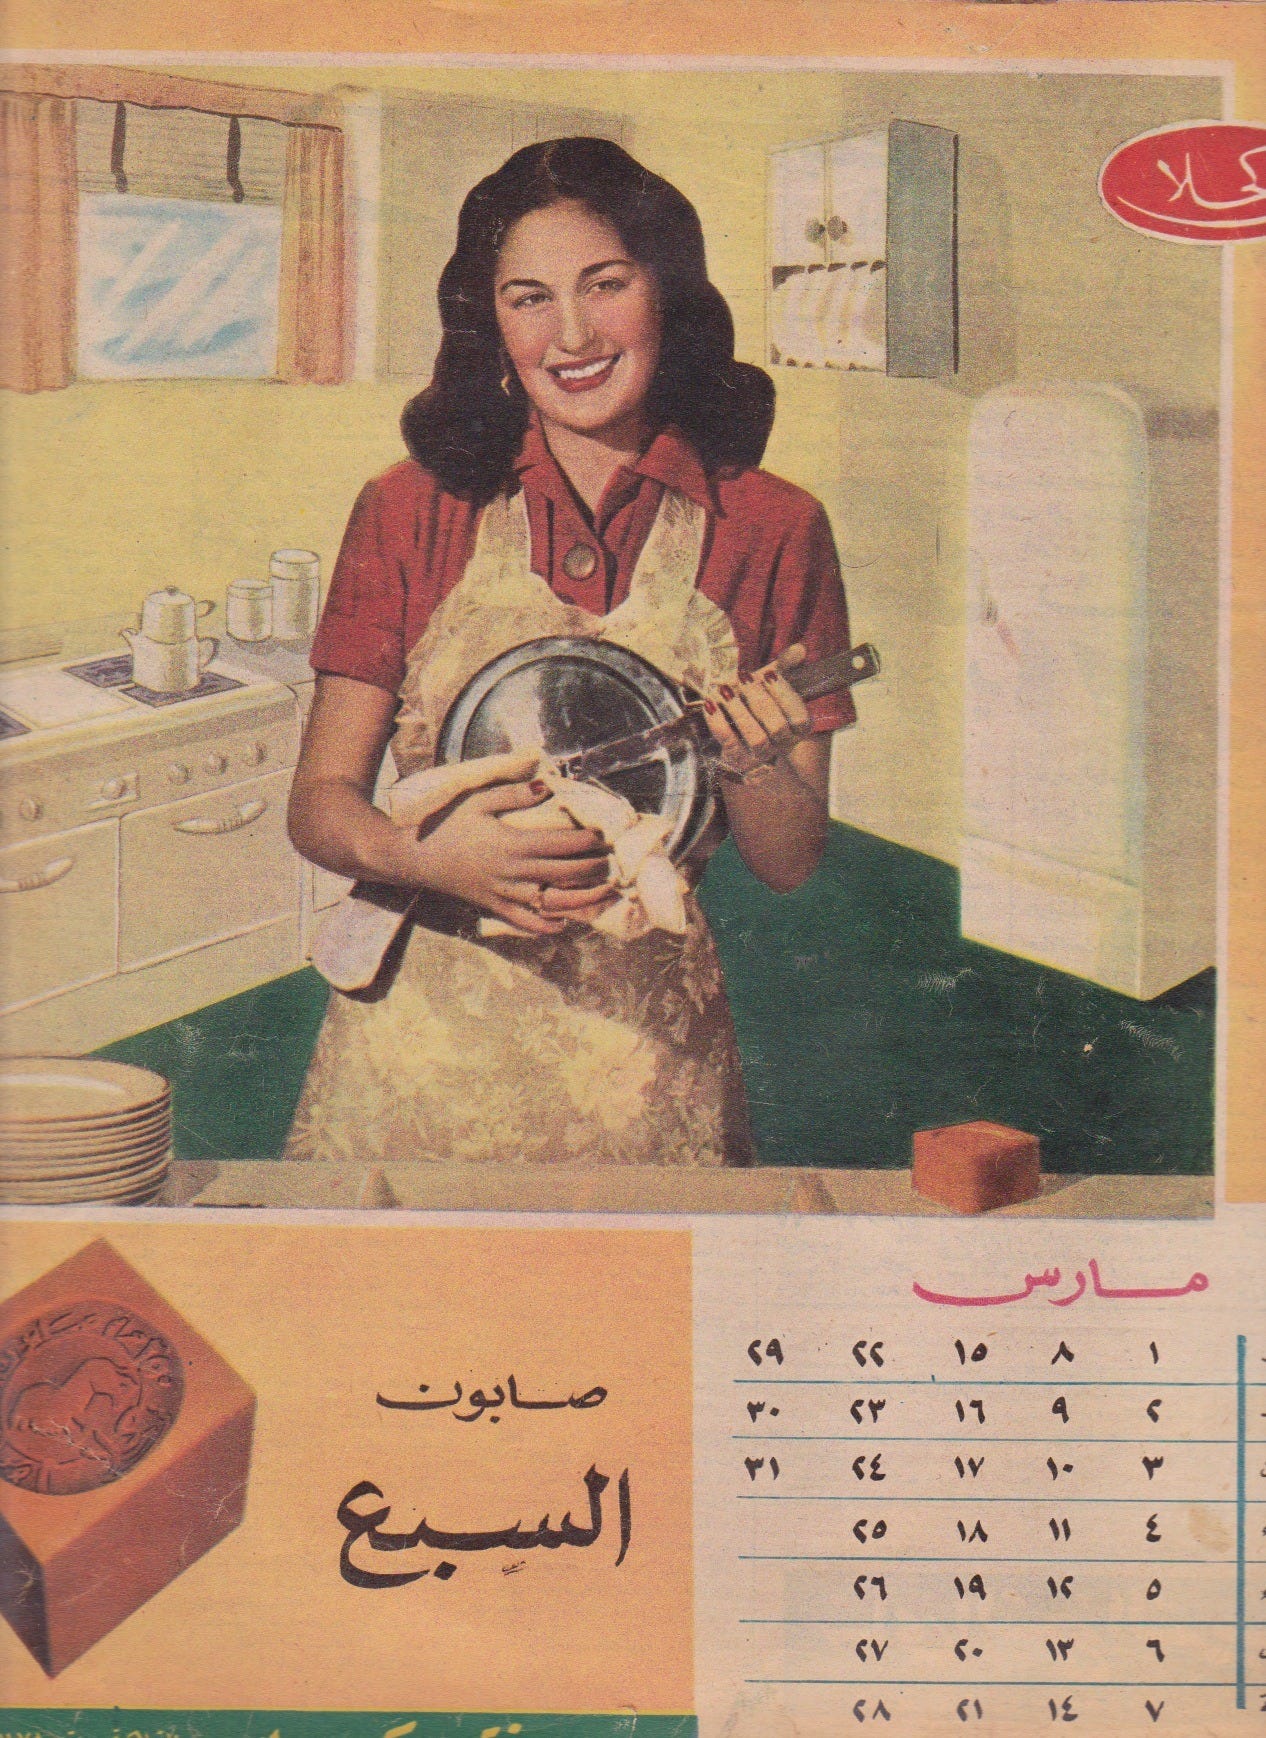 1952 soap ad